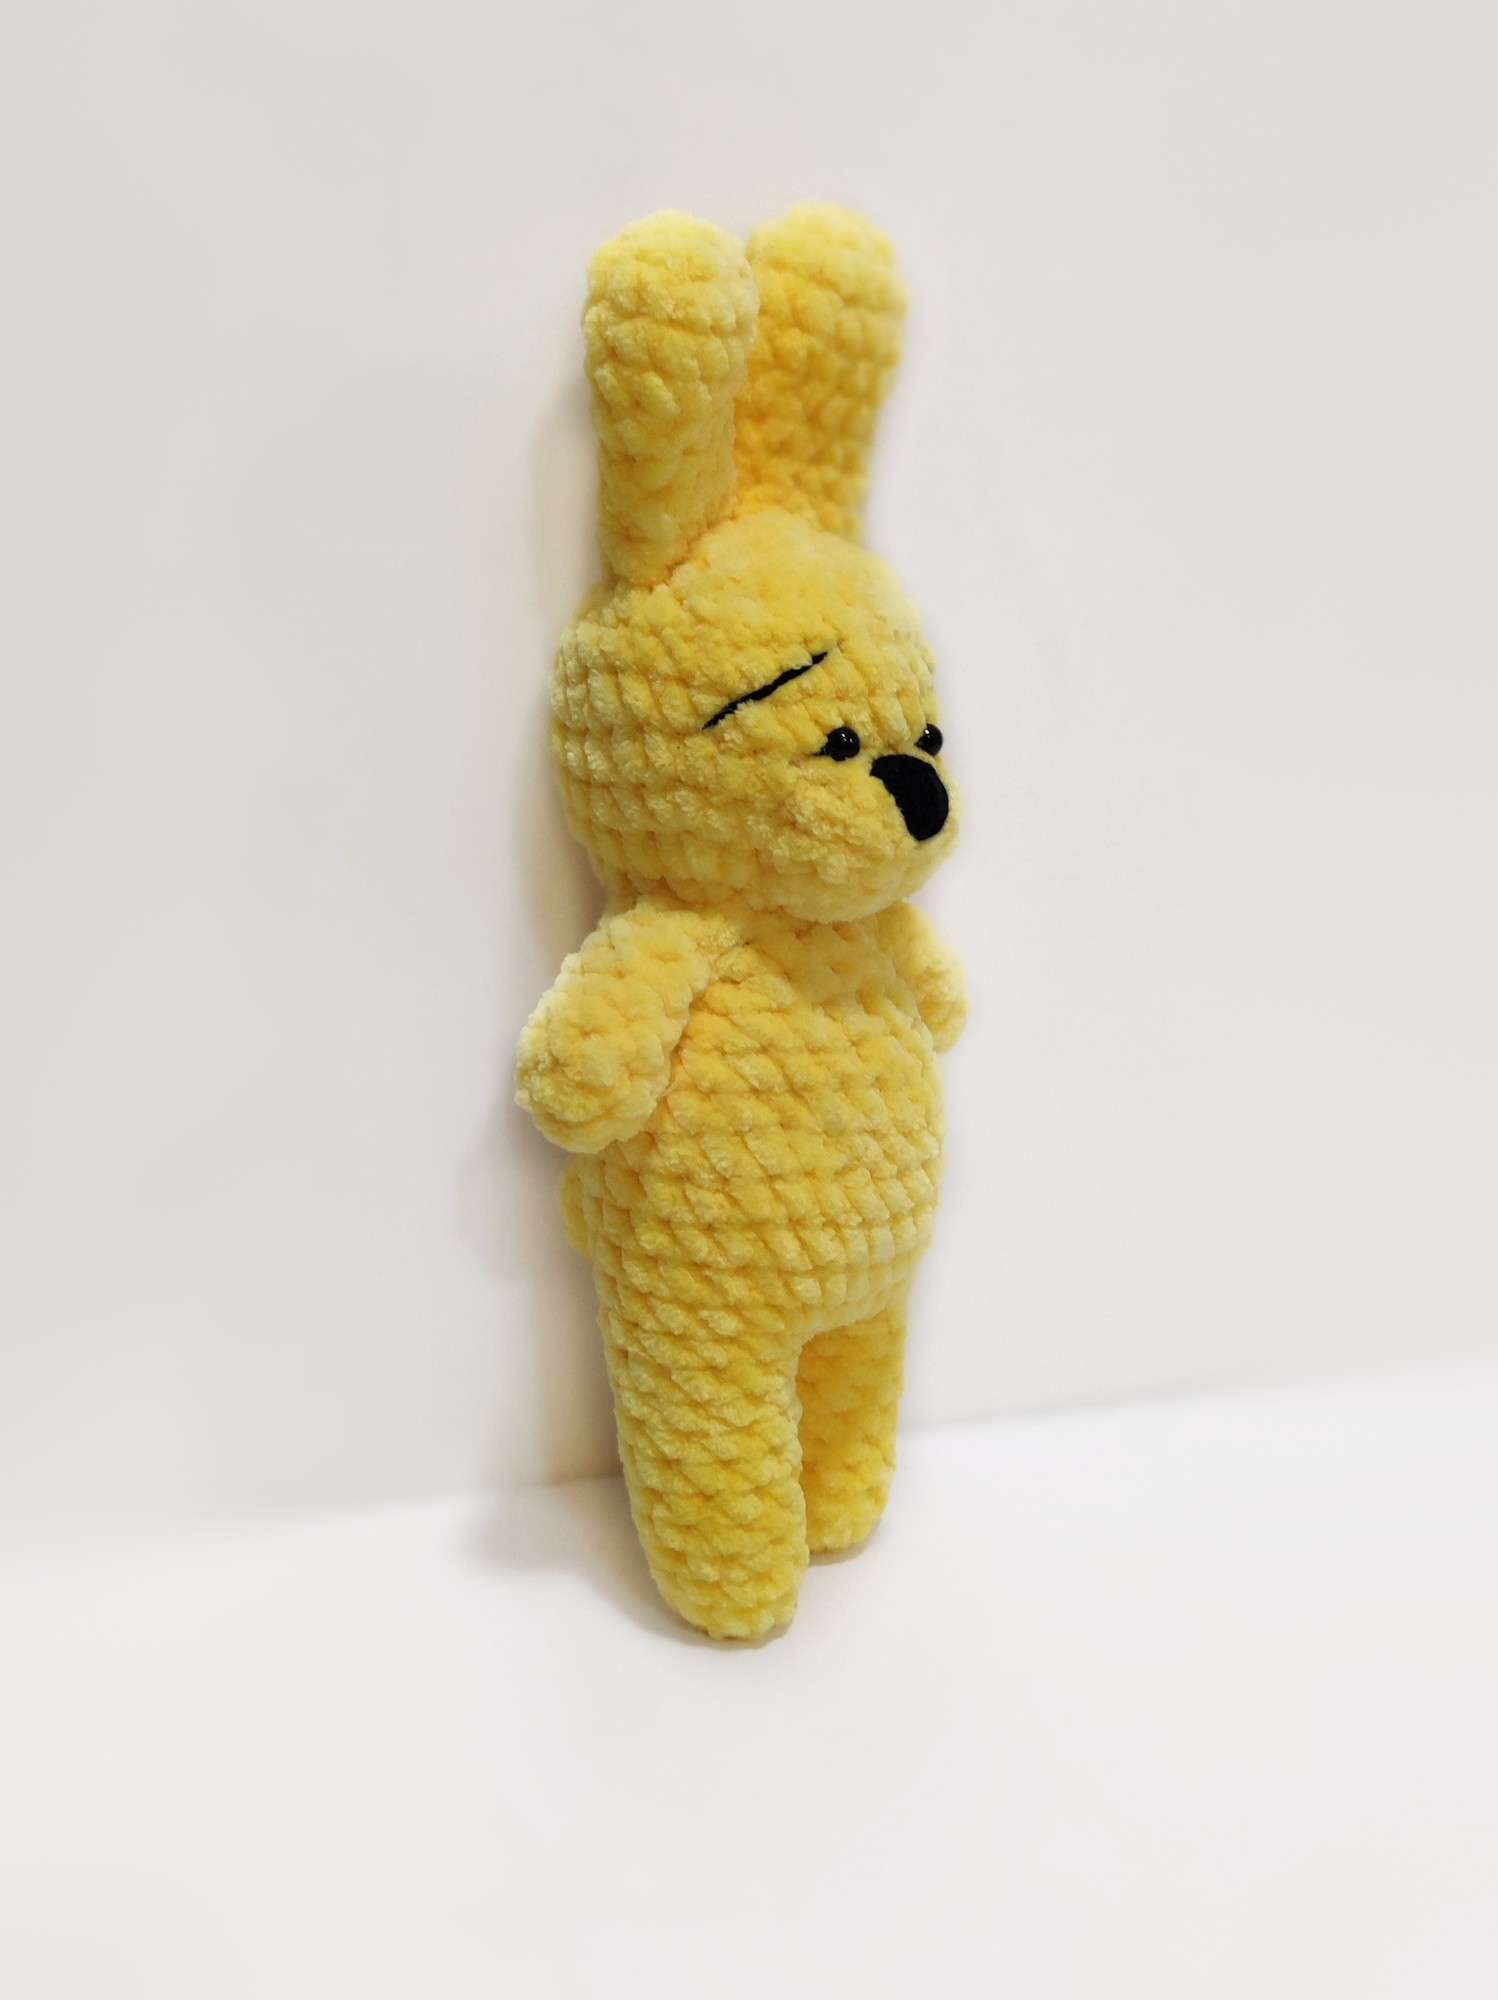 Cute yellow bunny toy. Bonus gift for newborn. Plush stuffed animals made in Ukraine